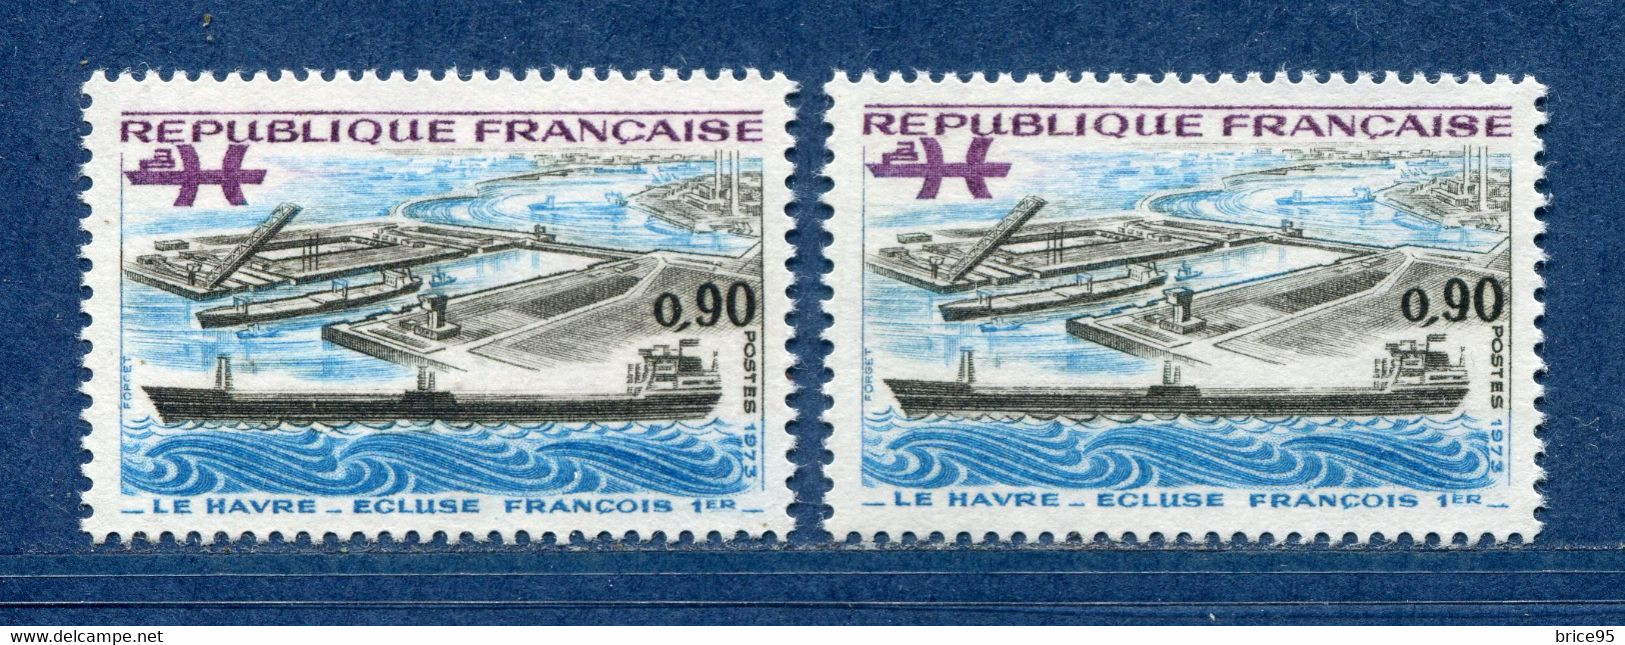 ⭐ France - Variété - YT N° 1772 - Couleurs - Pétouille - Neuf Sans Charnière - 1973 ⭐ - Ungebraucht